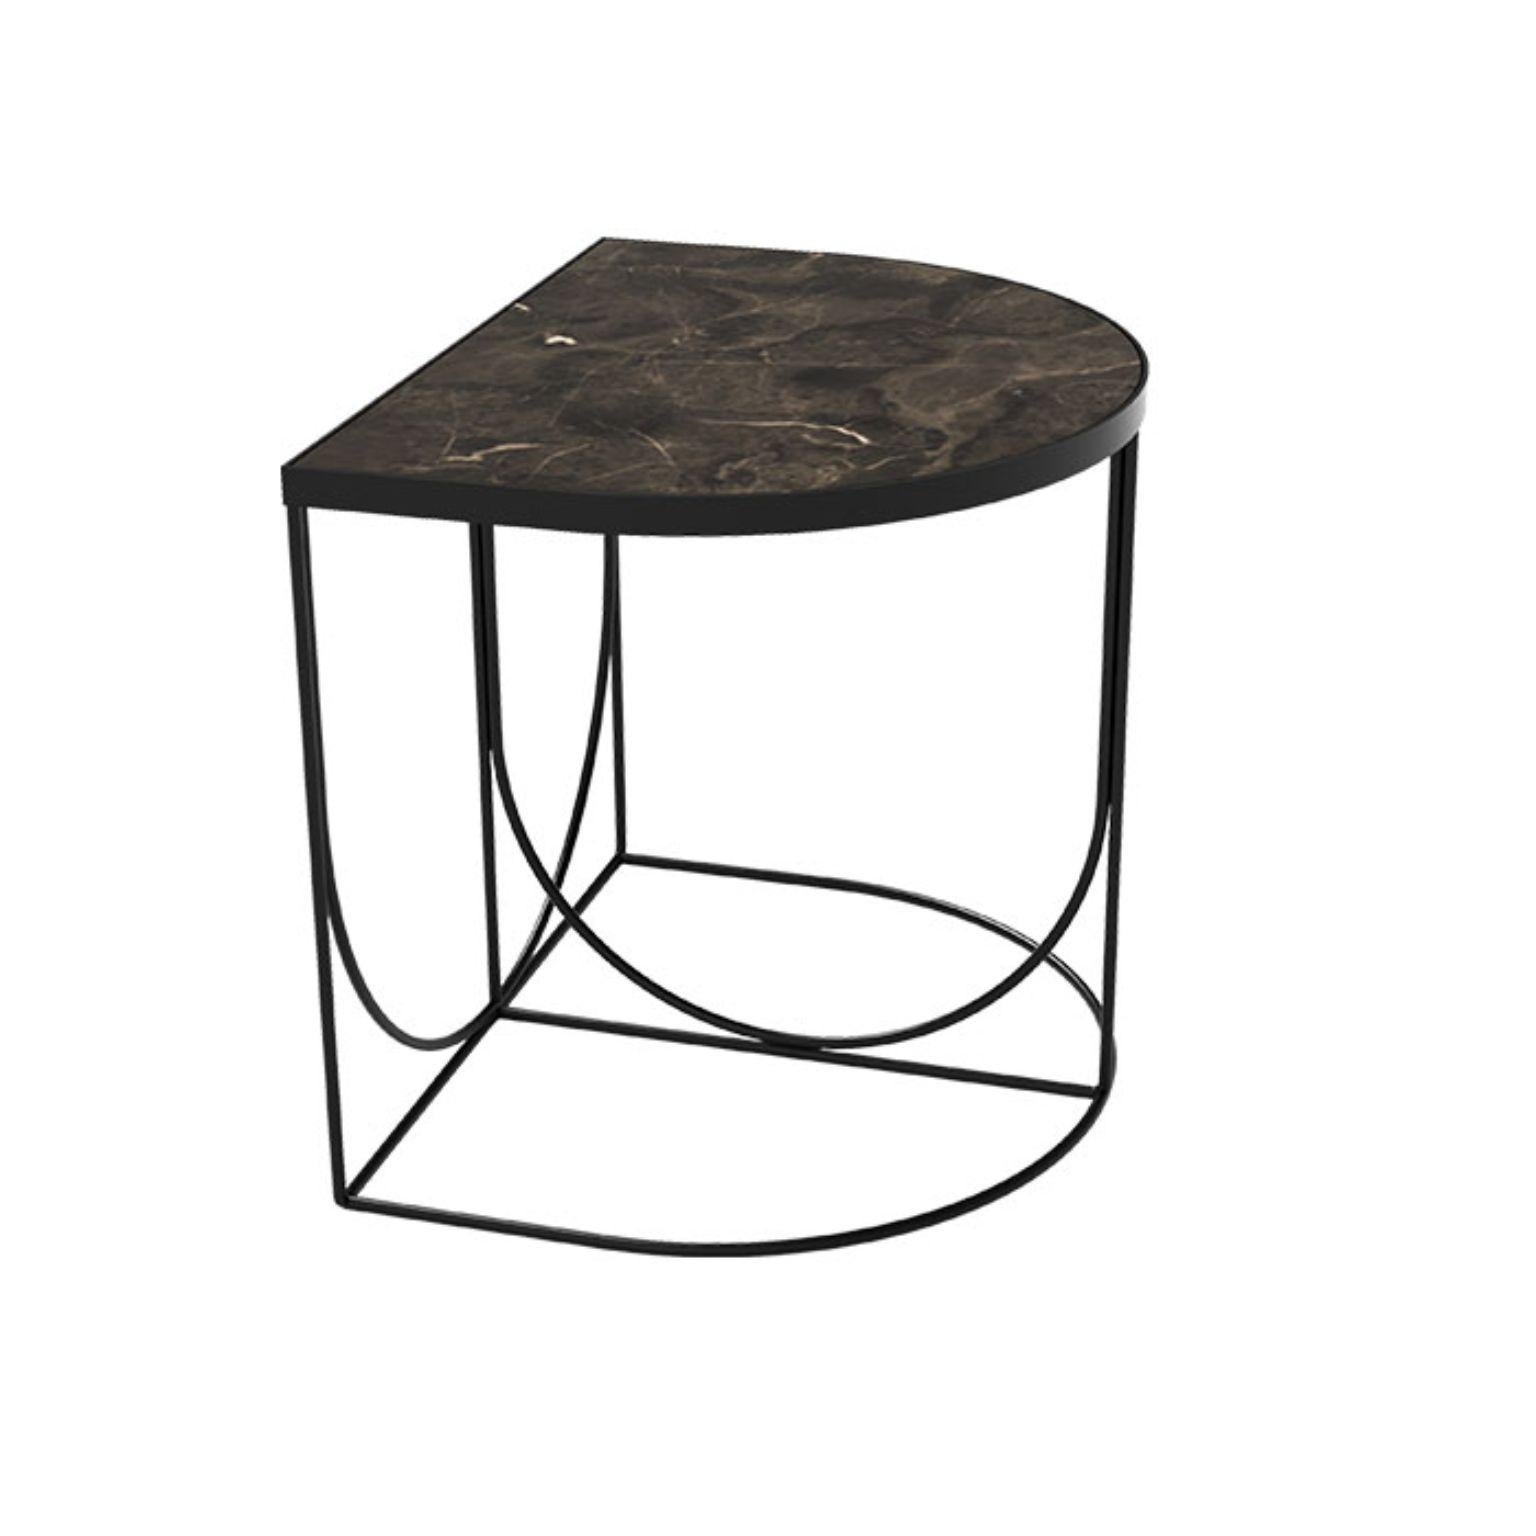 Table d'appoint minimaliste en marbre et acier
Dimensions : L 40 x L 50 x H 44.3 cm
MATERIAL : Marbre, acier  

Cette série se compose de trois designs différents que vous pouvez combiner de multiples façons. Les plateaux de table sont